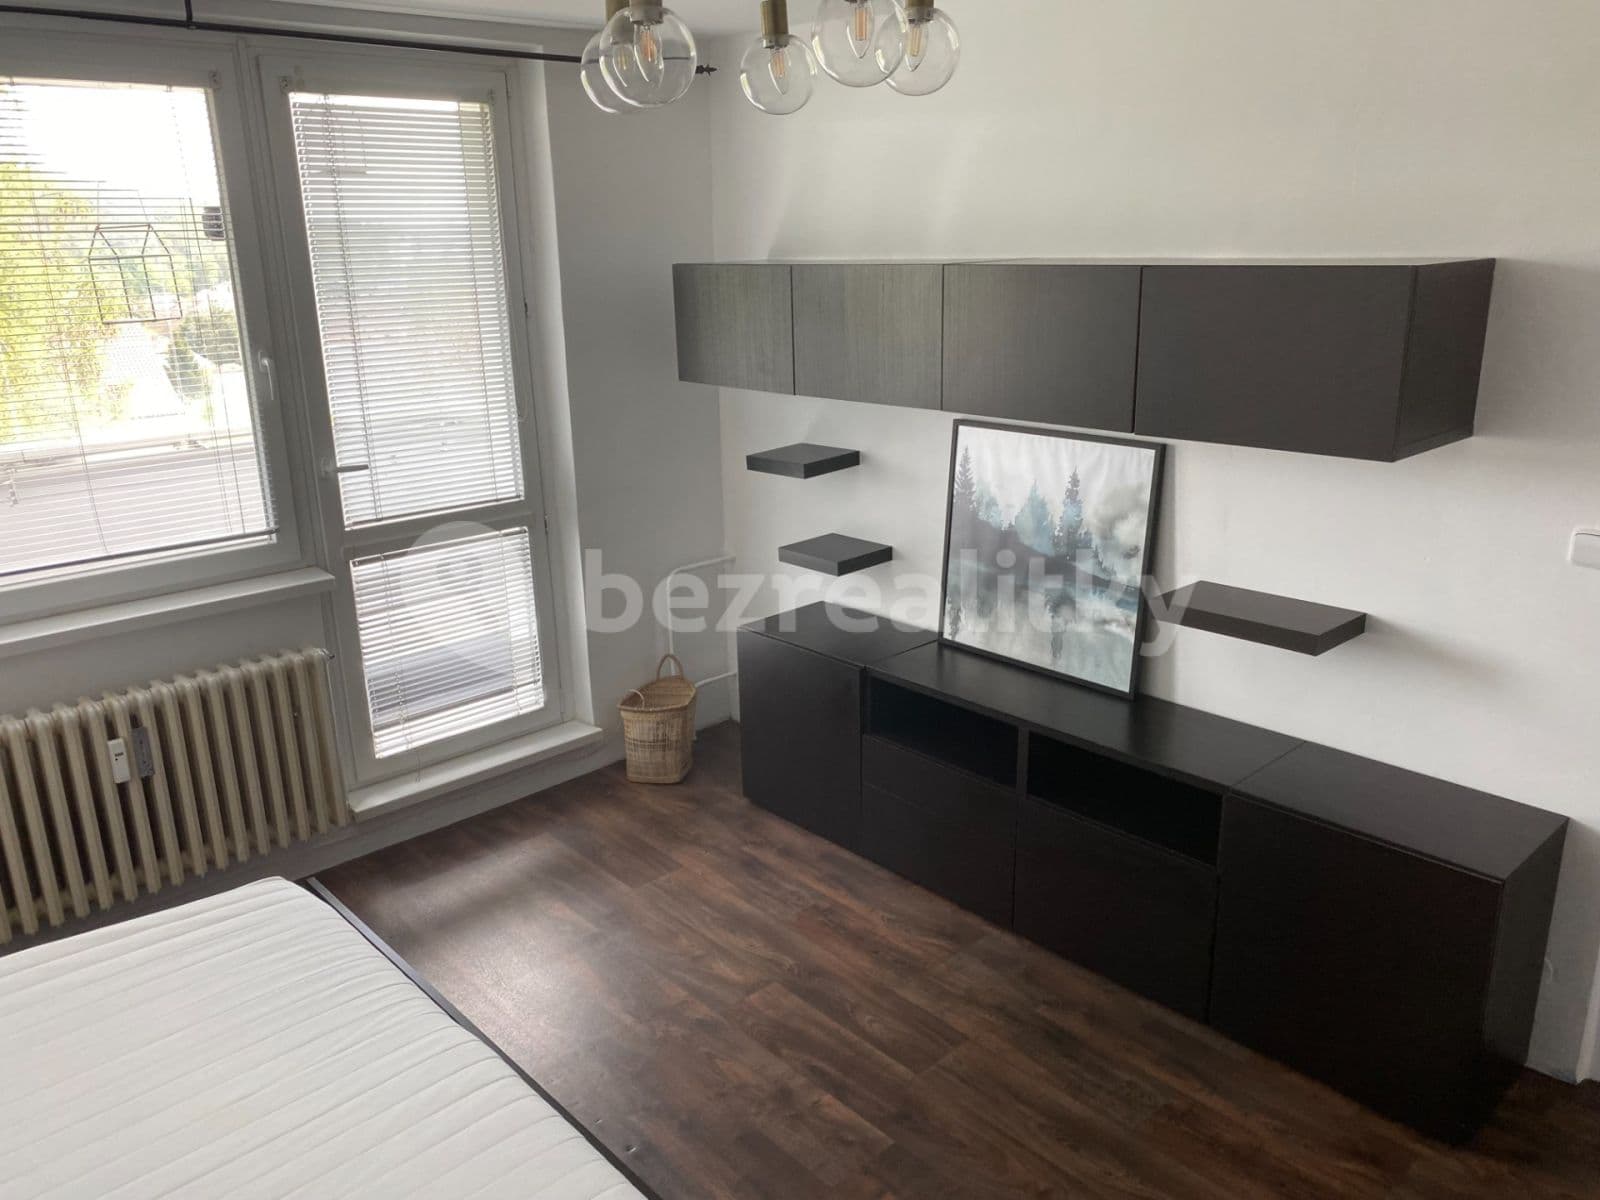 1 bedroom flat to rent, 35 m², Květnická, Tišnov, Jihomoravský Region